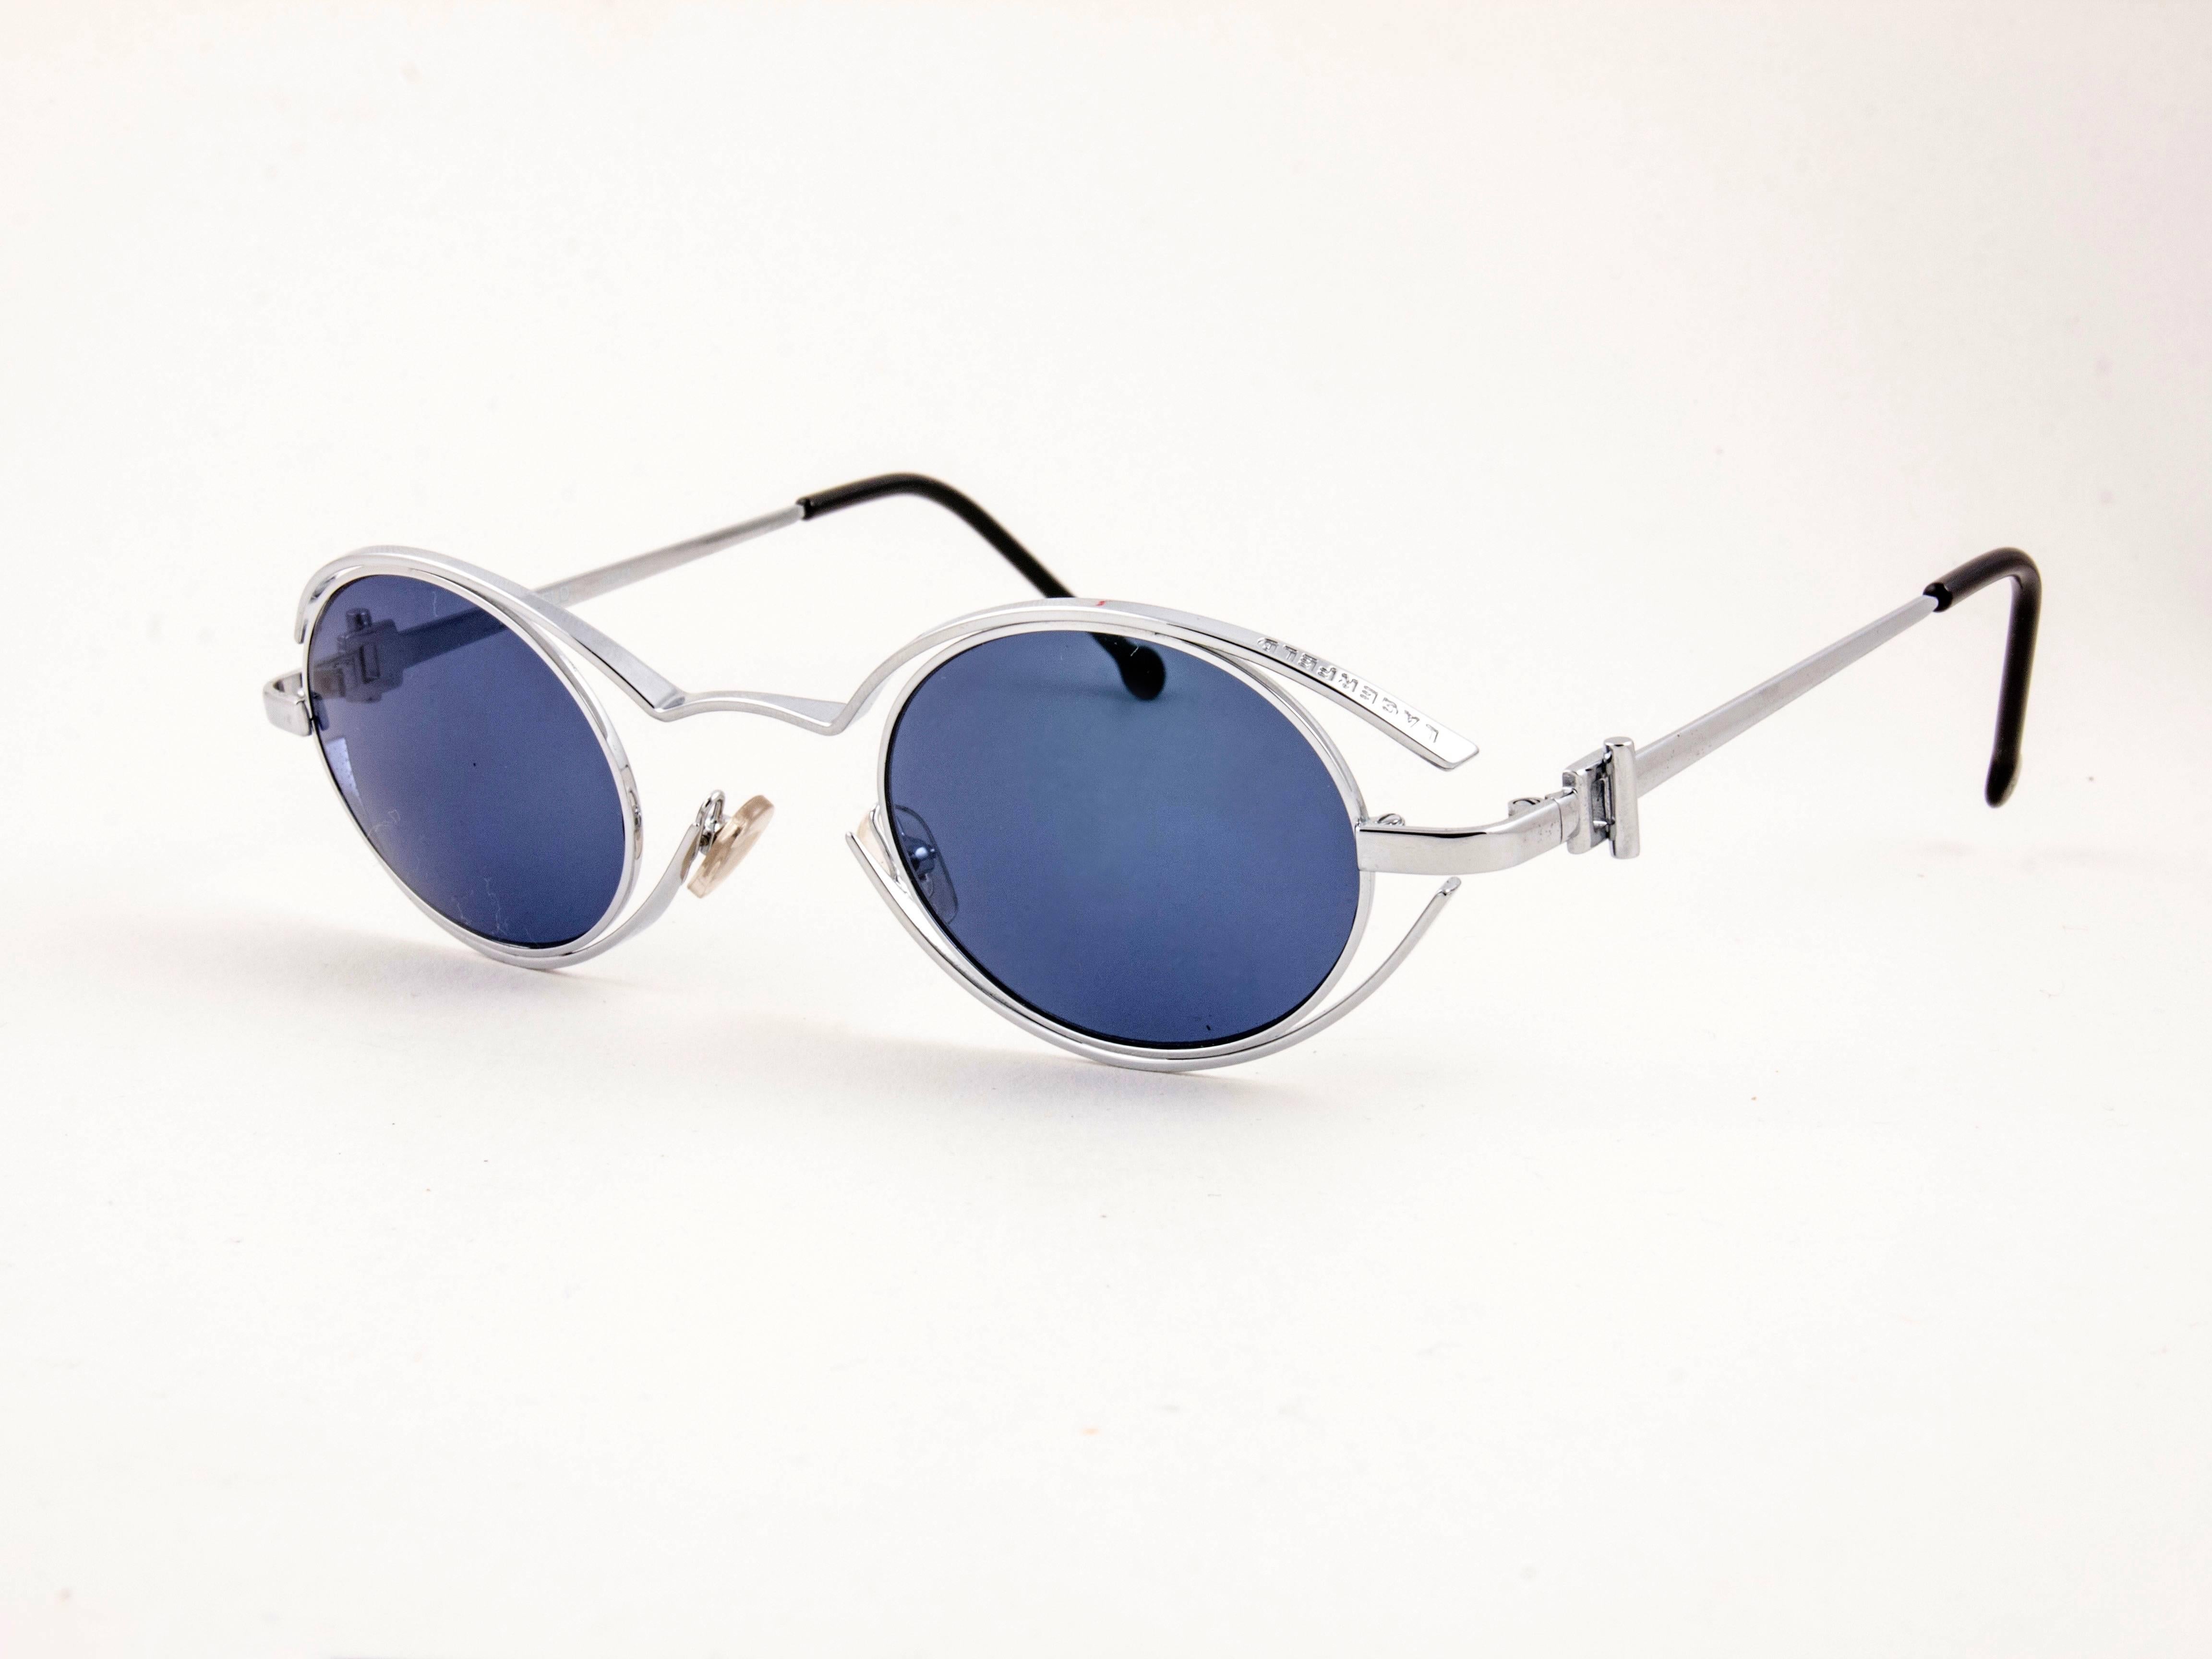 Nouveau Vintage Paire étonnante de lunettes de soleil ovales argentées Karl Lagerfeld 4123 04 des années 1980 encadrant une paire de verres gris fumée.
 
 Neuf, jamais porté ou exposé. Conçu et produit en France.
